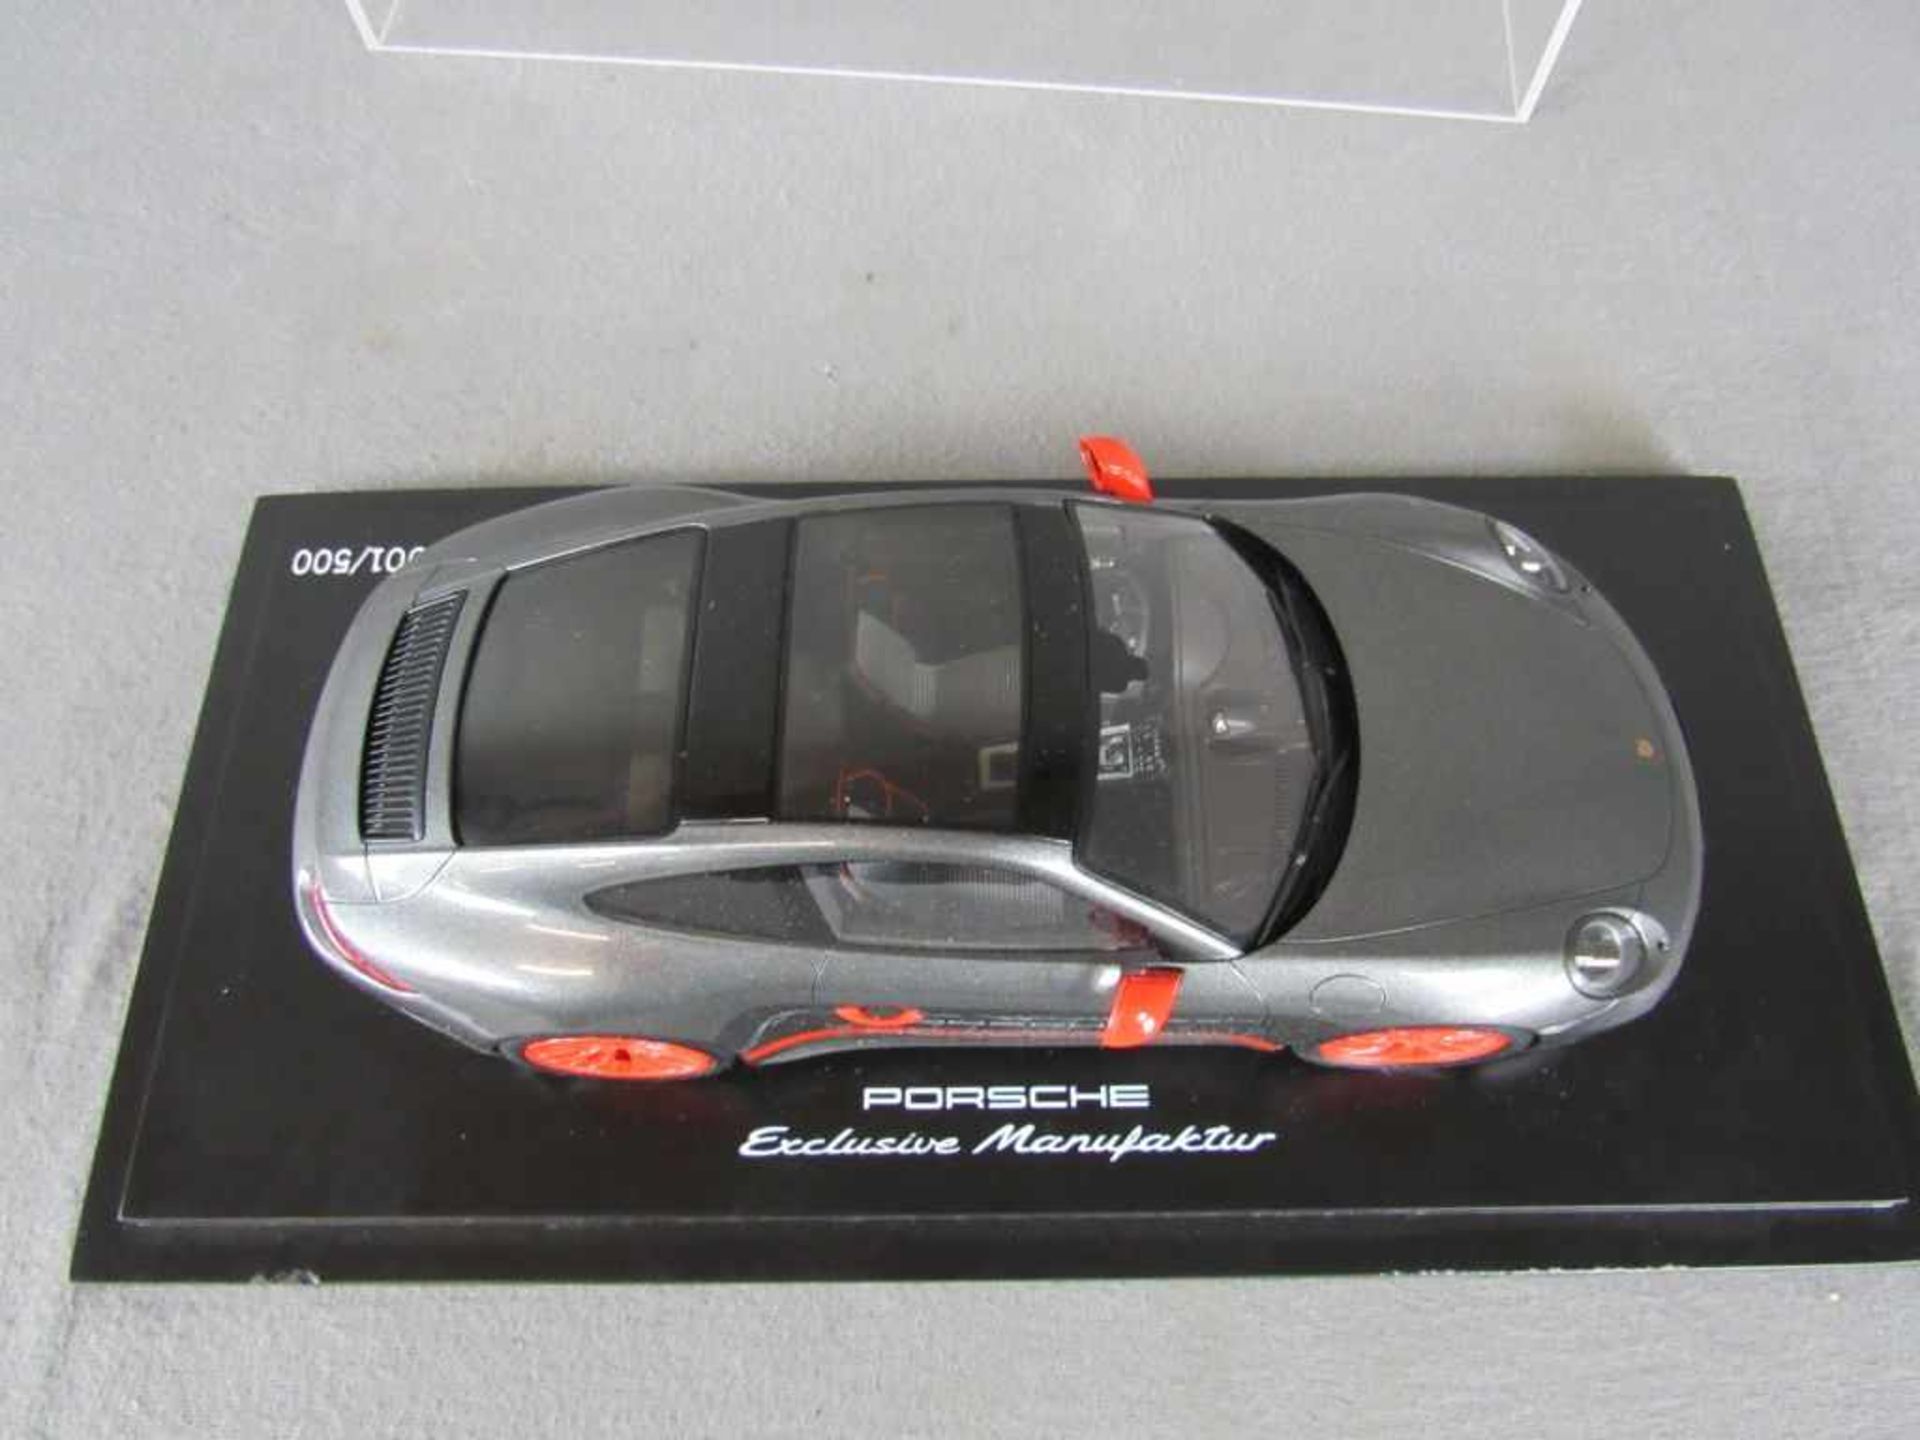 Modellauto Porsche Original Porsche Modell im Maßstab 1:18 in original Box unbespieltes - Image 2 of 6